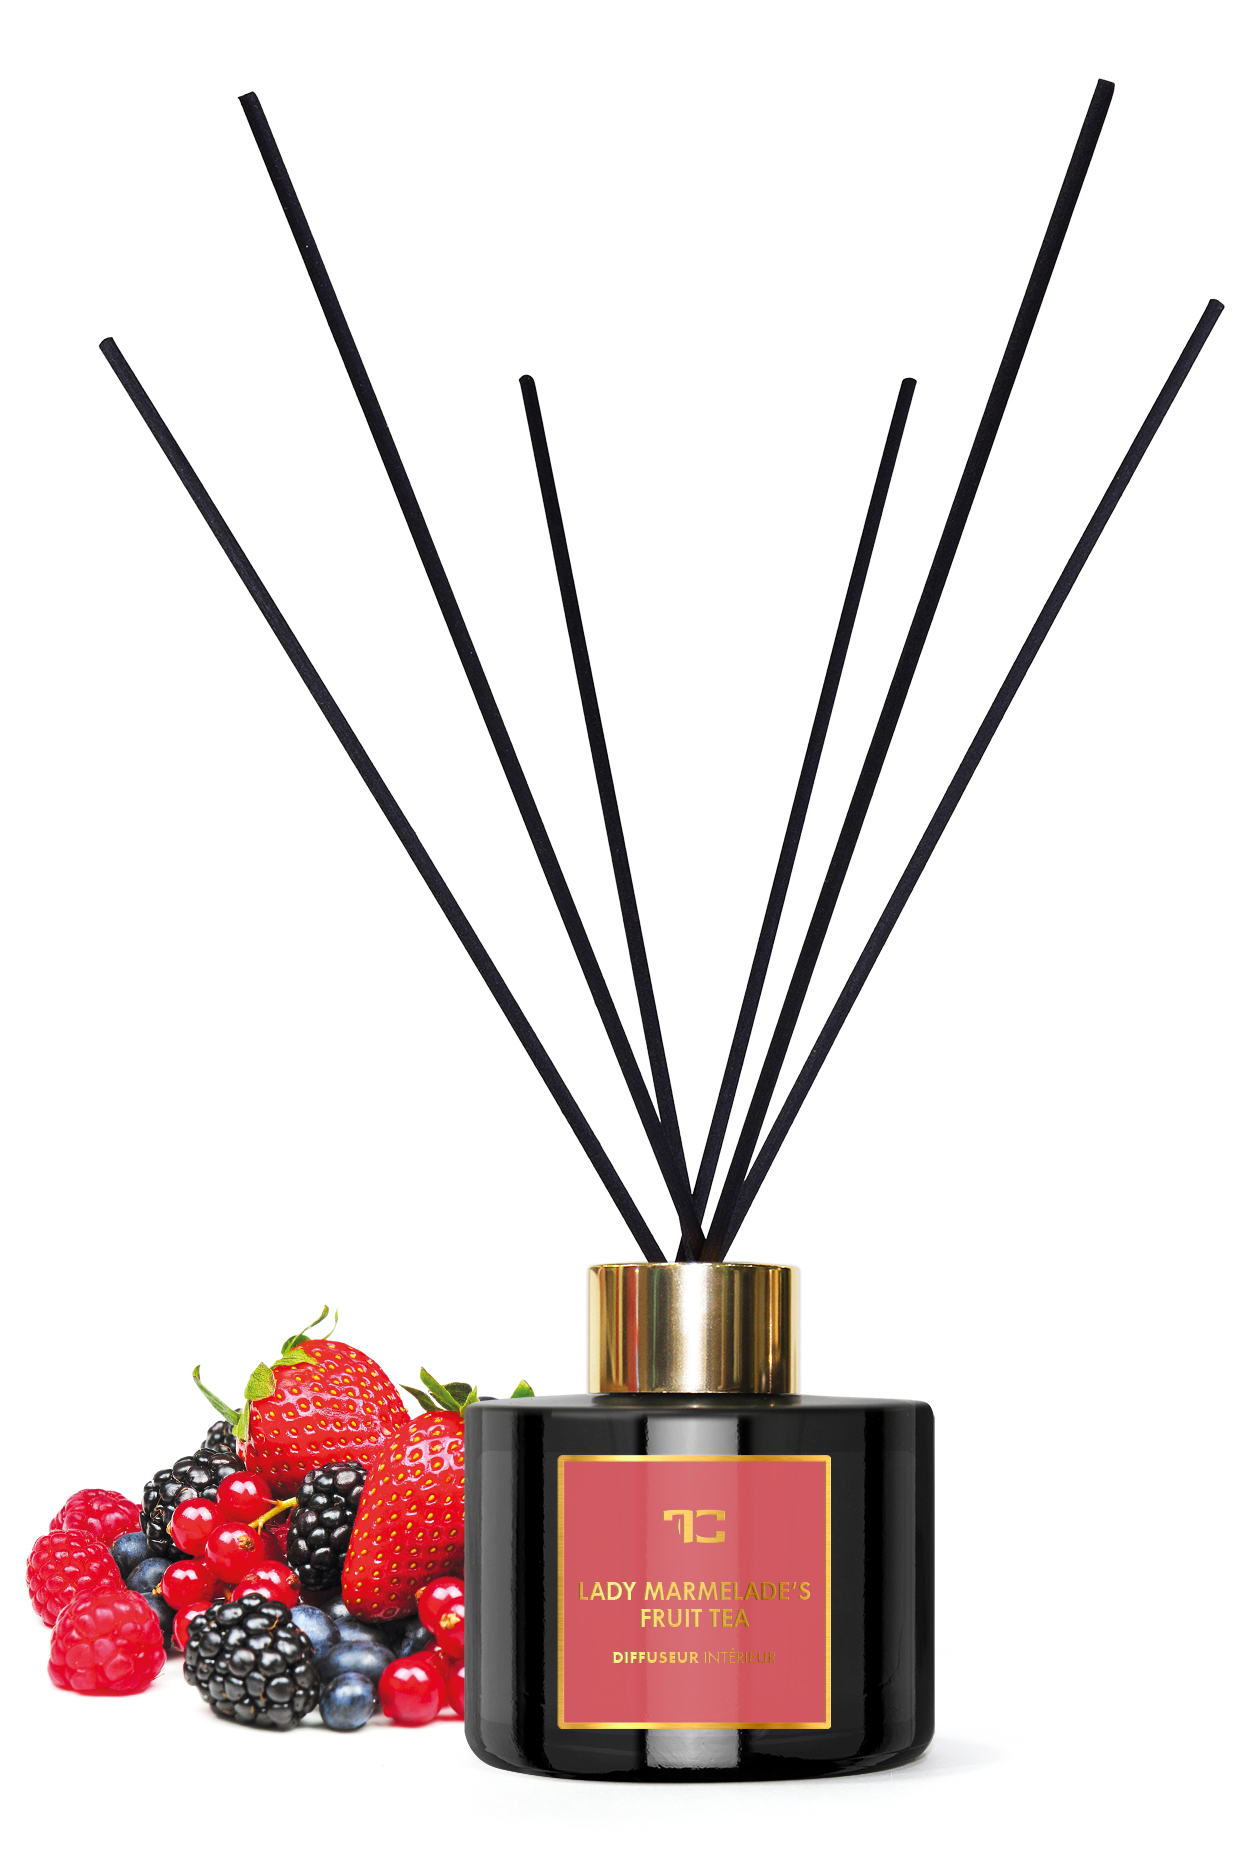 Interiérový tyčinkový bytový parfém 200 ml, LADY MARMELADE’S, DIFFUSEUR INTÉRIEUR